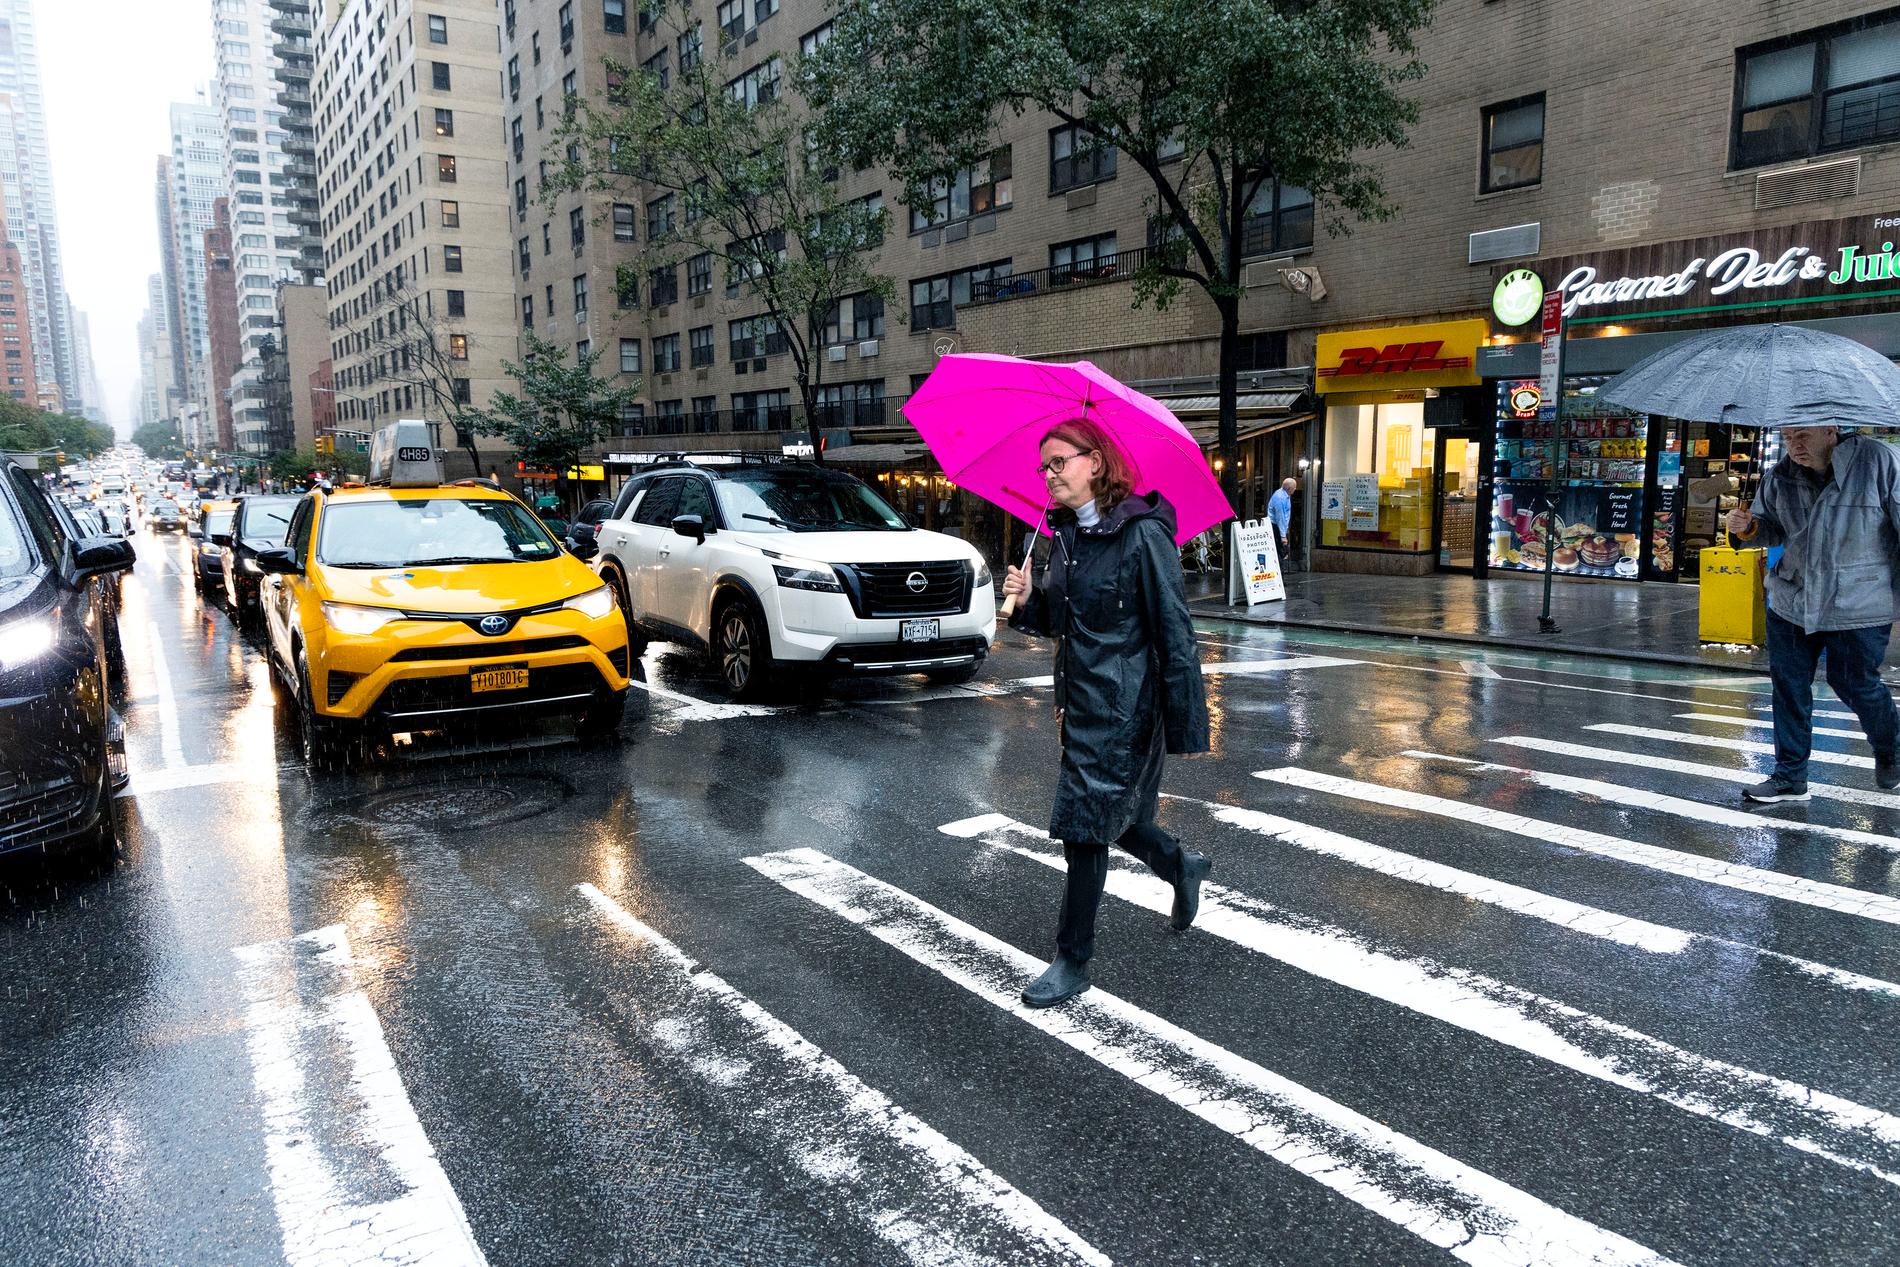 VÆRET: Regnet pøser ned over New York høstdagen VG møter Brattested. 